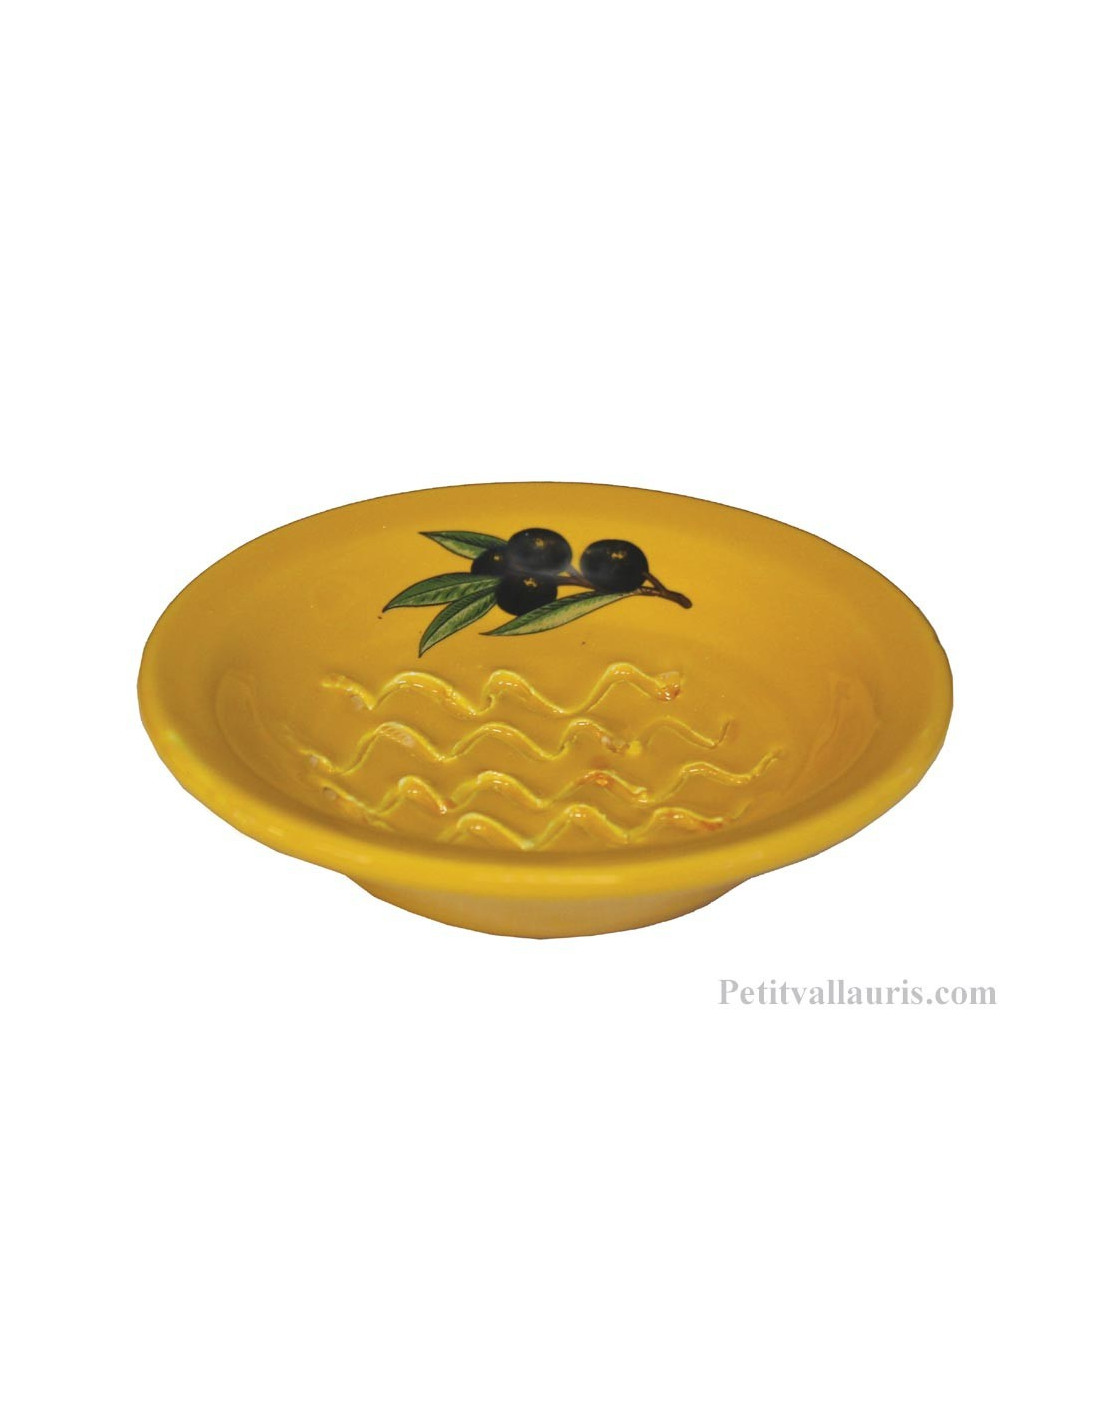 Gratte-Rape aïl rond en faience jaune provençale décor artisanal décor  Olives noires